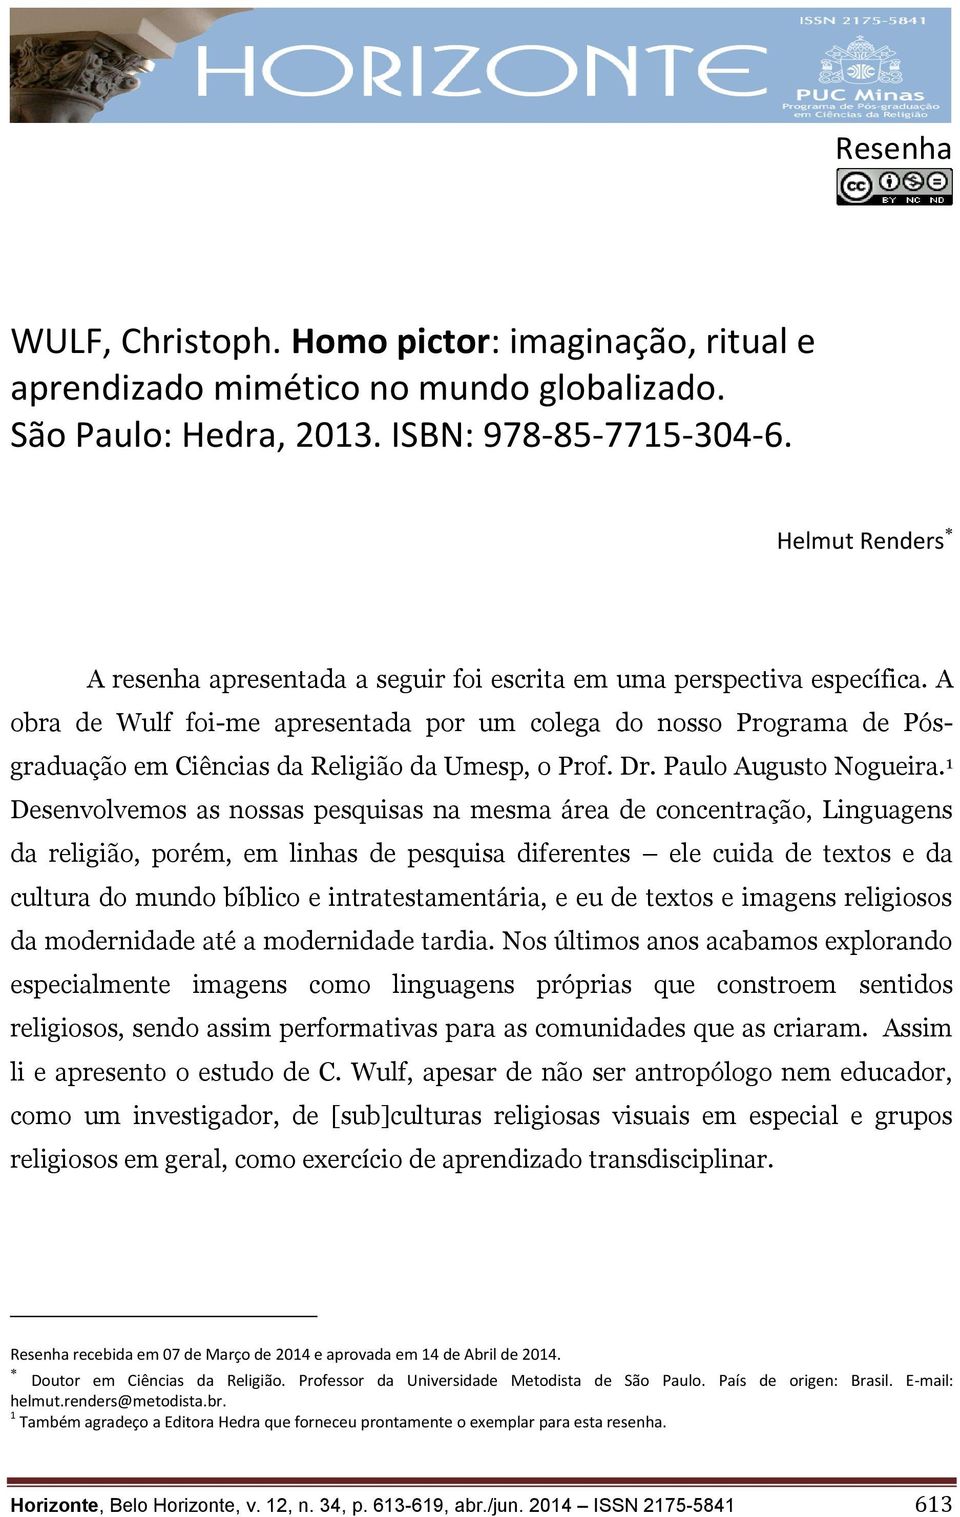 A obra de Wulf foi-me apresentada por um colega do nosso Programa de Pósgraduação em Ciências da Religião da Umesp, o Prof. Dr. Paulo Augusto Nogueira.